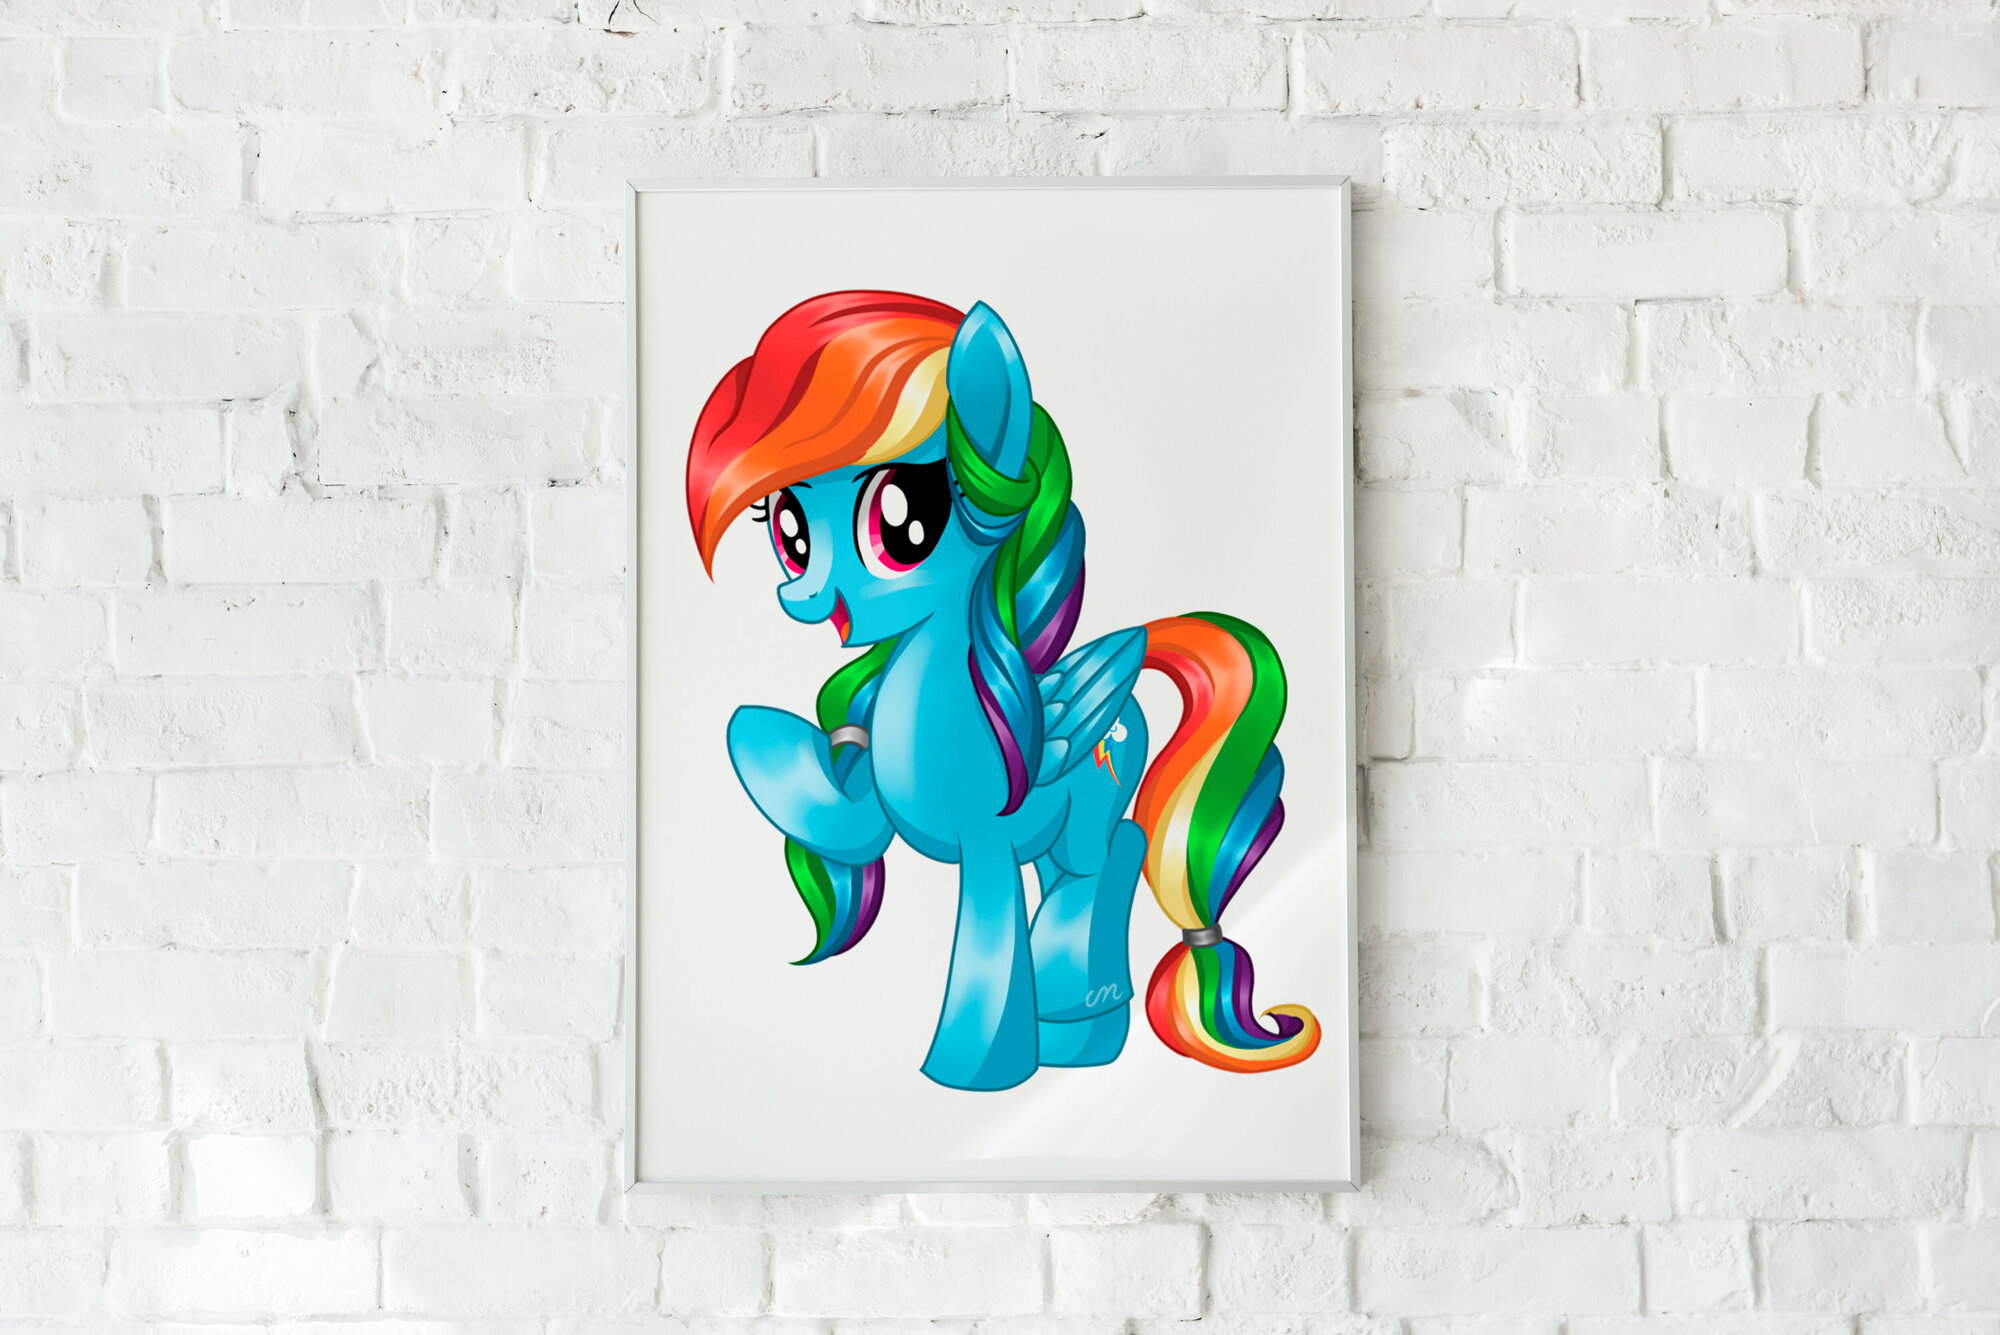 Плакат Мои маленькие пони/My Little Pony/Пони/ Плакат на стену 21х30 см / Постер формата А4